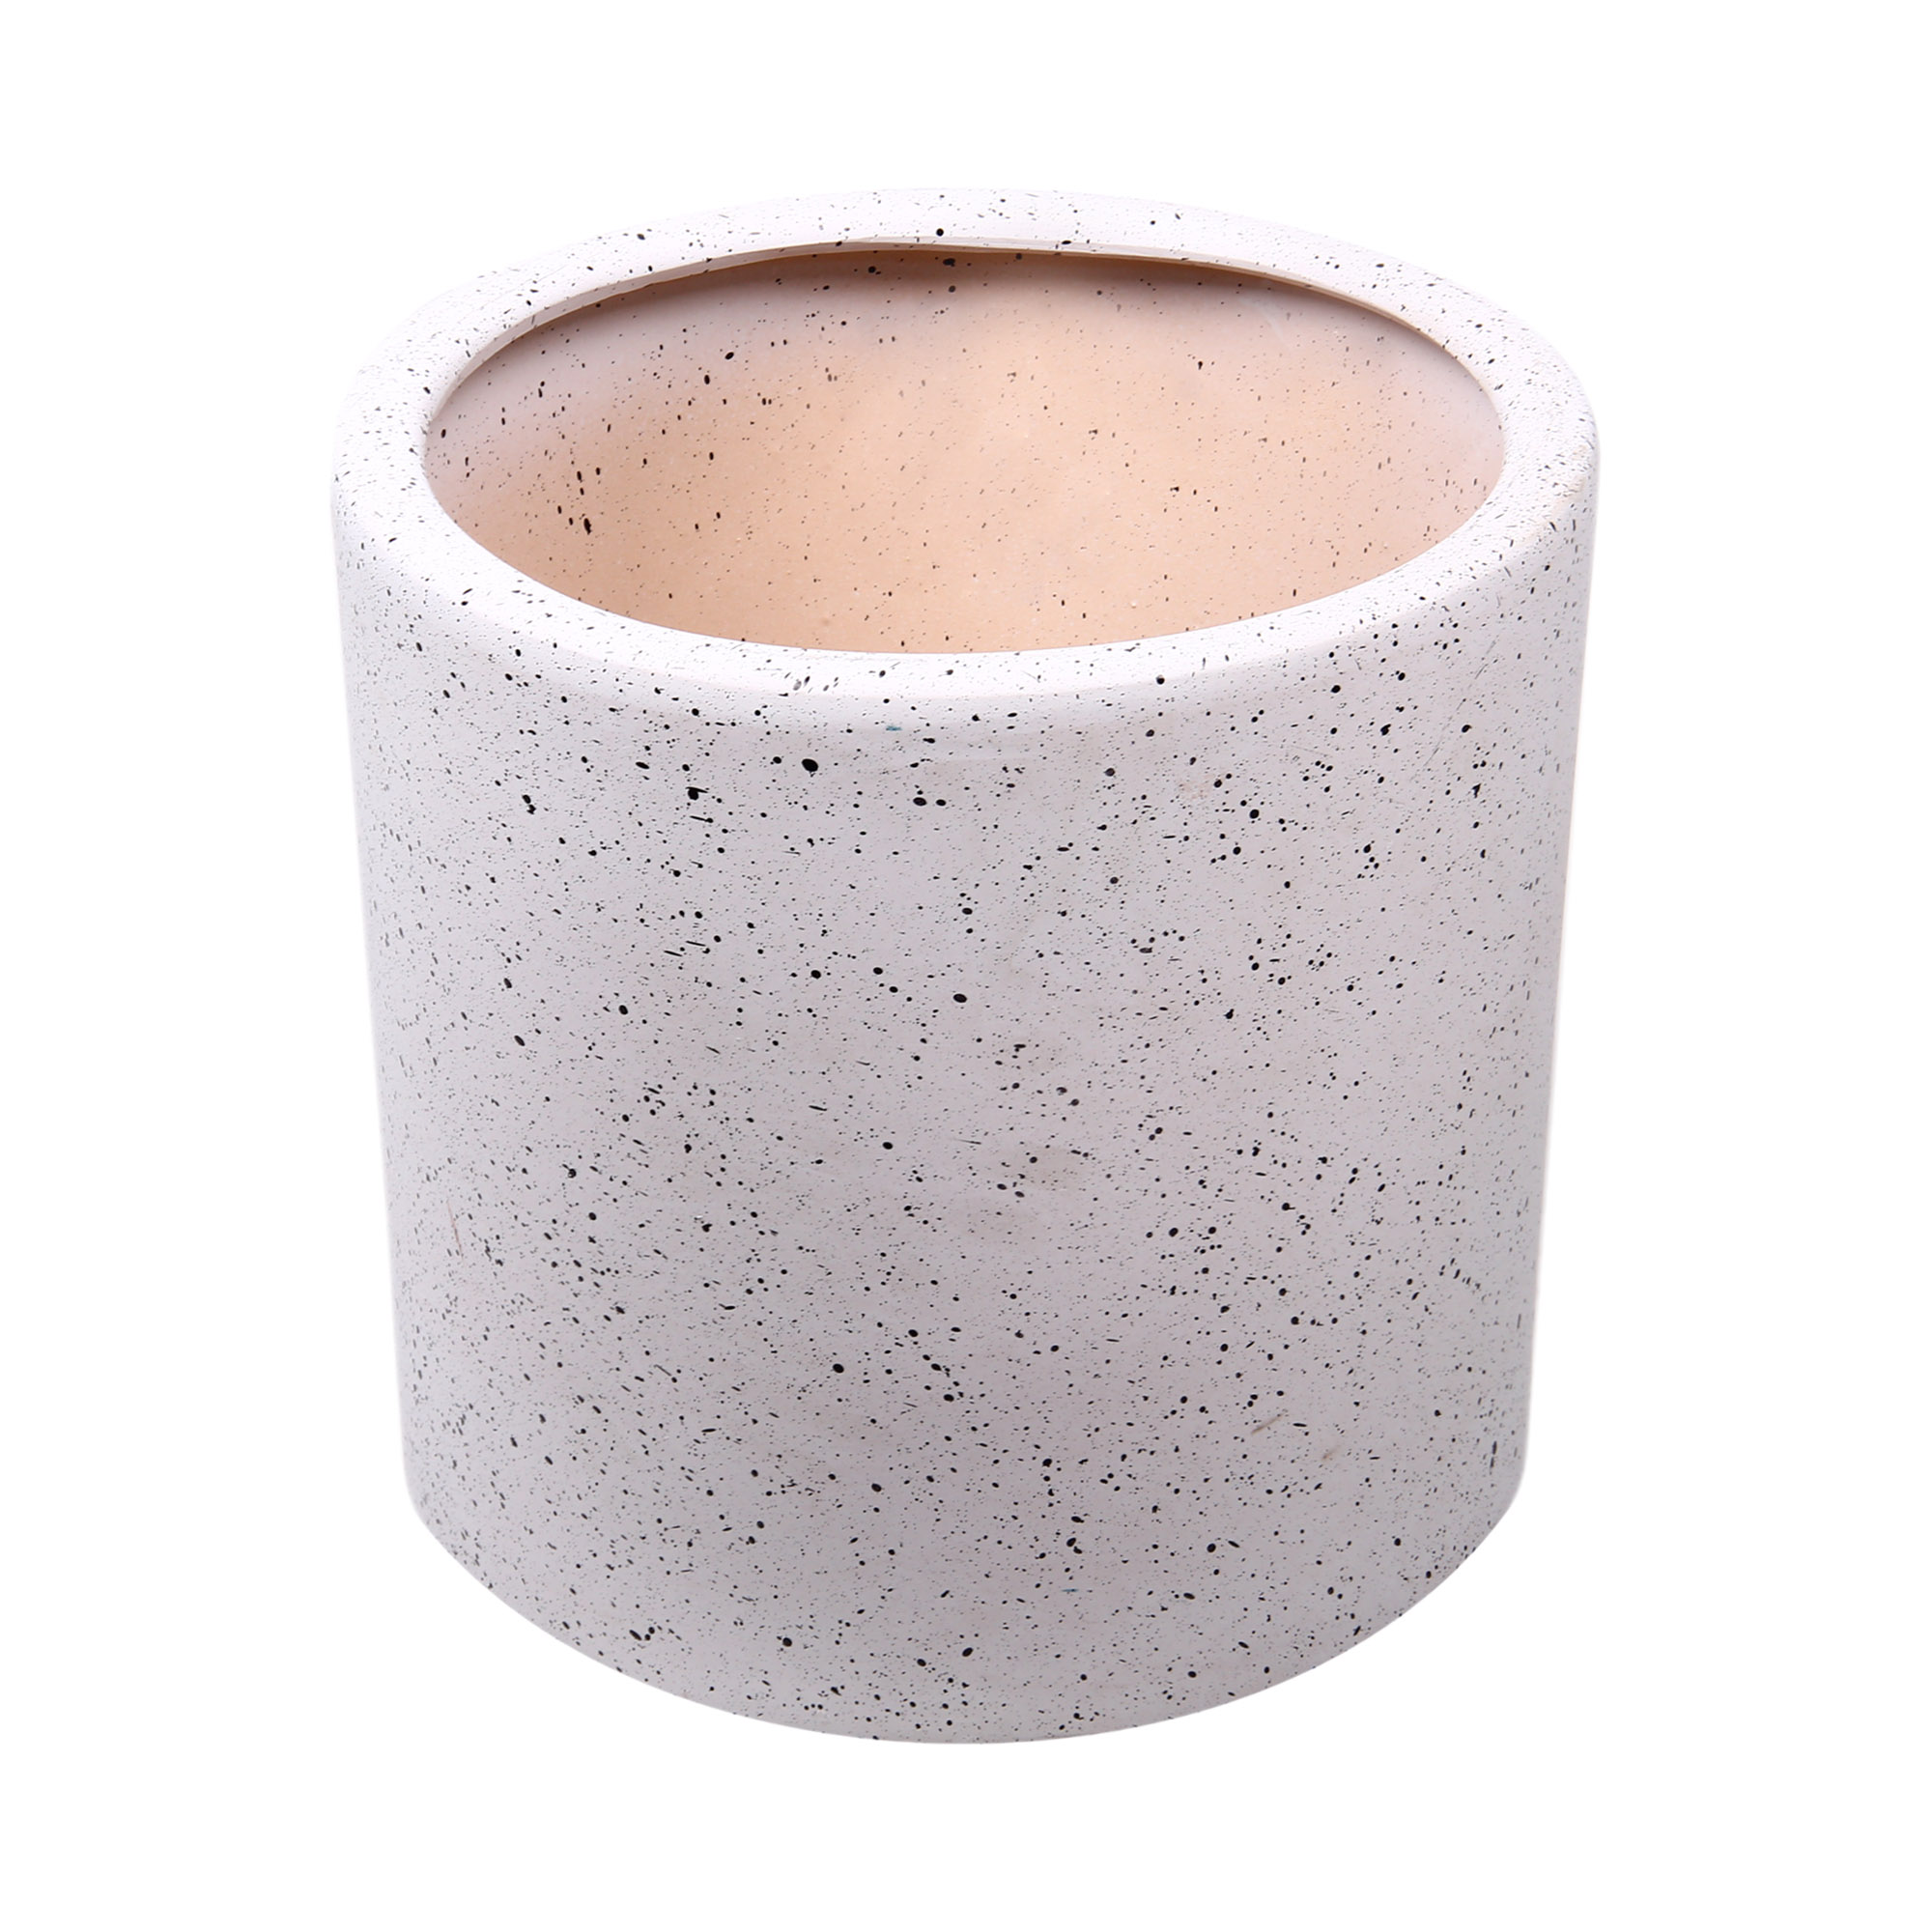 Горшок для цветов с поддоном Qianjin белый камень цилиндр 40х40х39 см